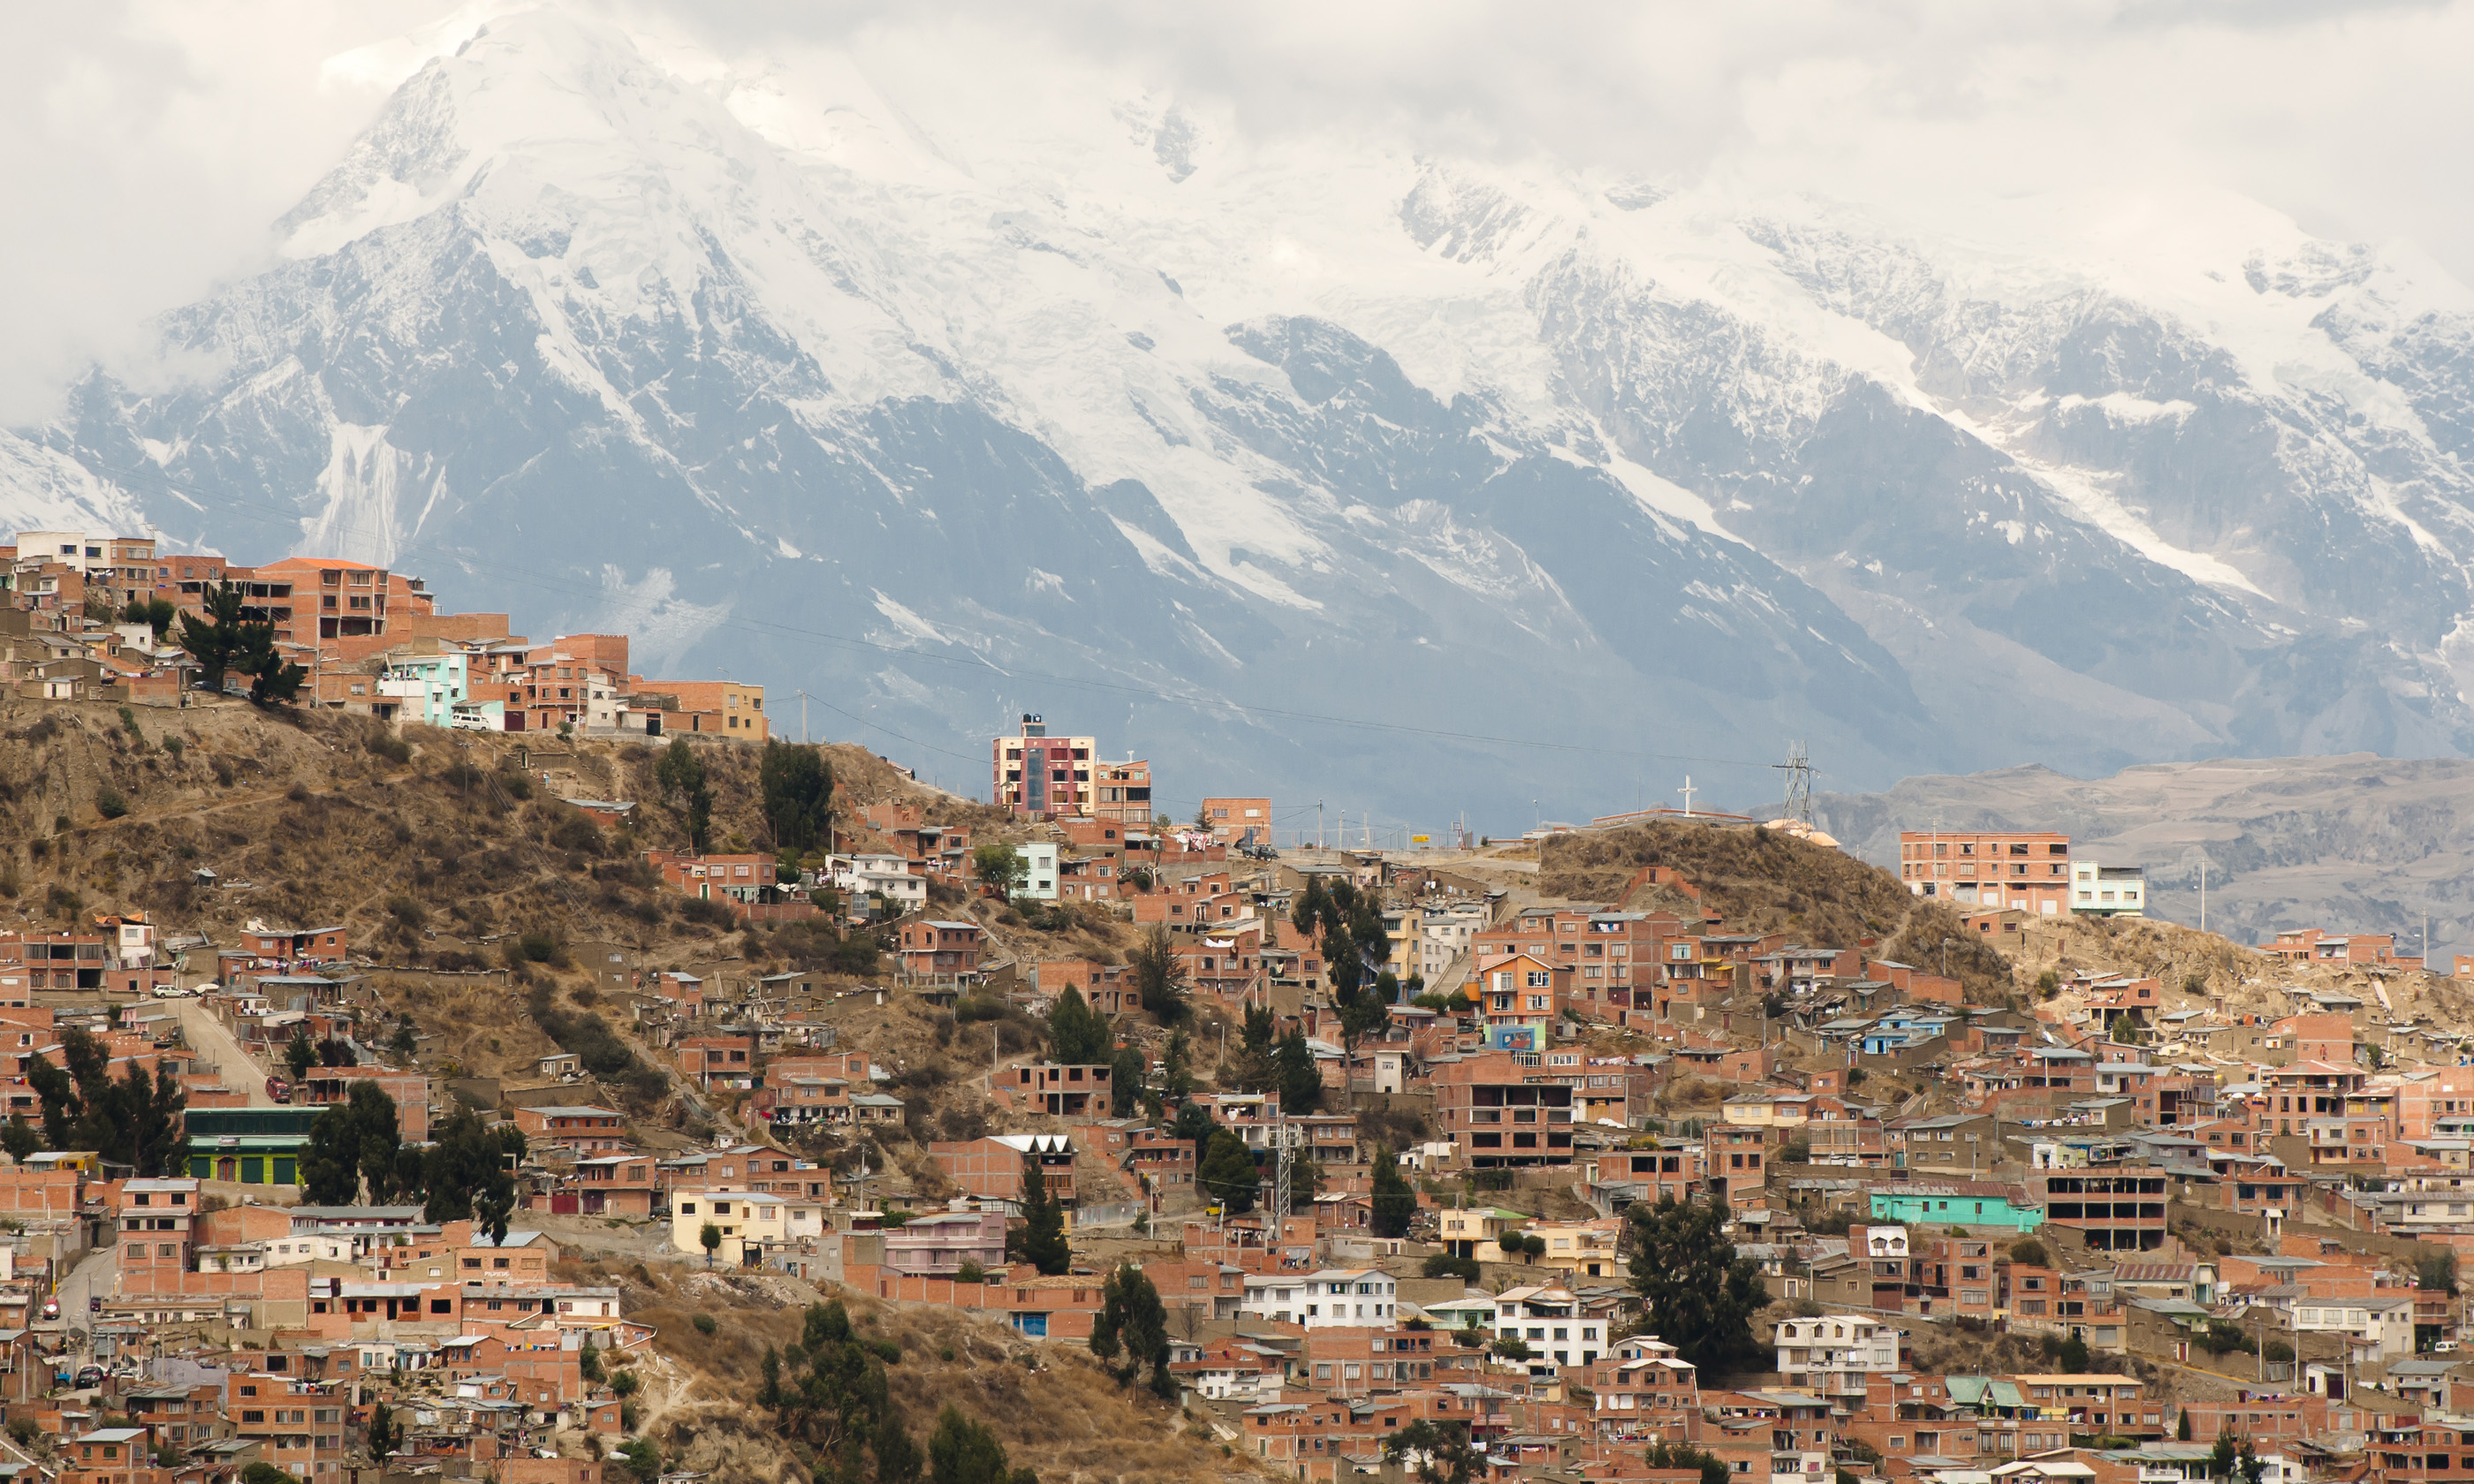 La Paz, Bolivia (Shutterstock.com)